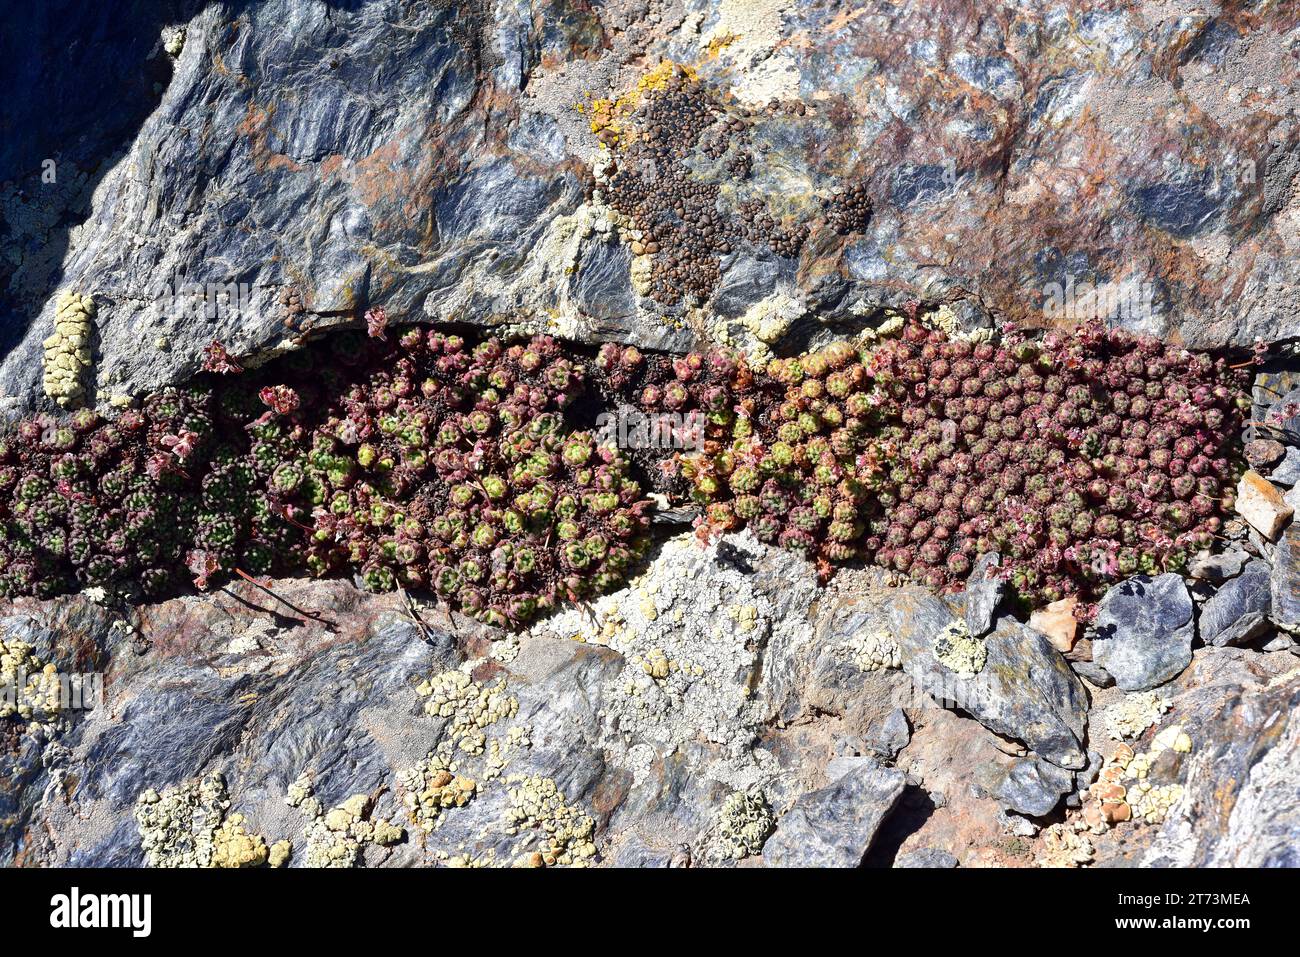 Siempreviva de Sierra Nevada (Sempervivum minutum or Sempervivum nevadense) is a succulent plant endemic to Sierra Nevada. This photo was taken in Sie Stock Photo